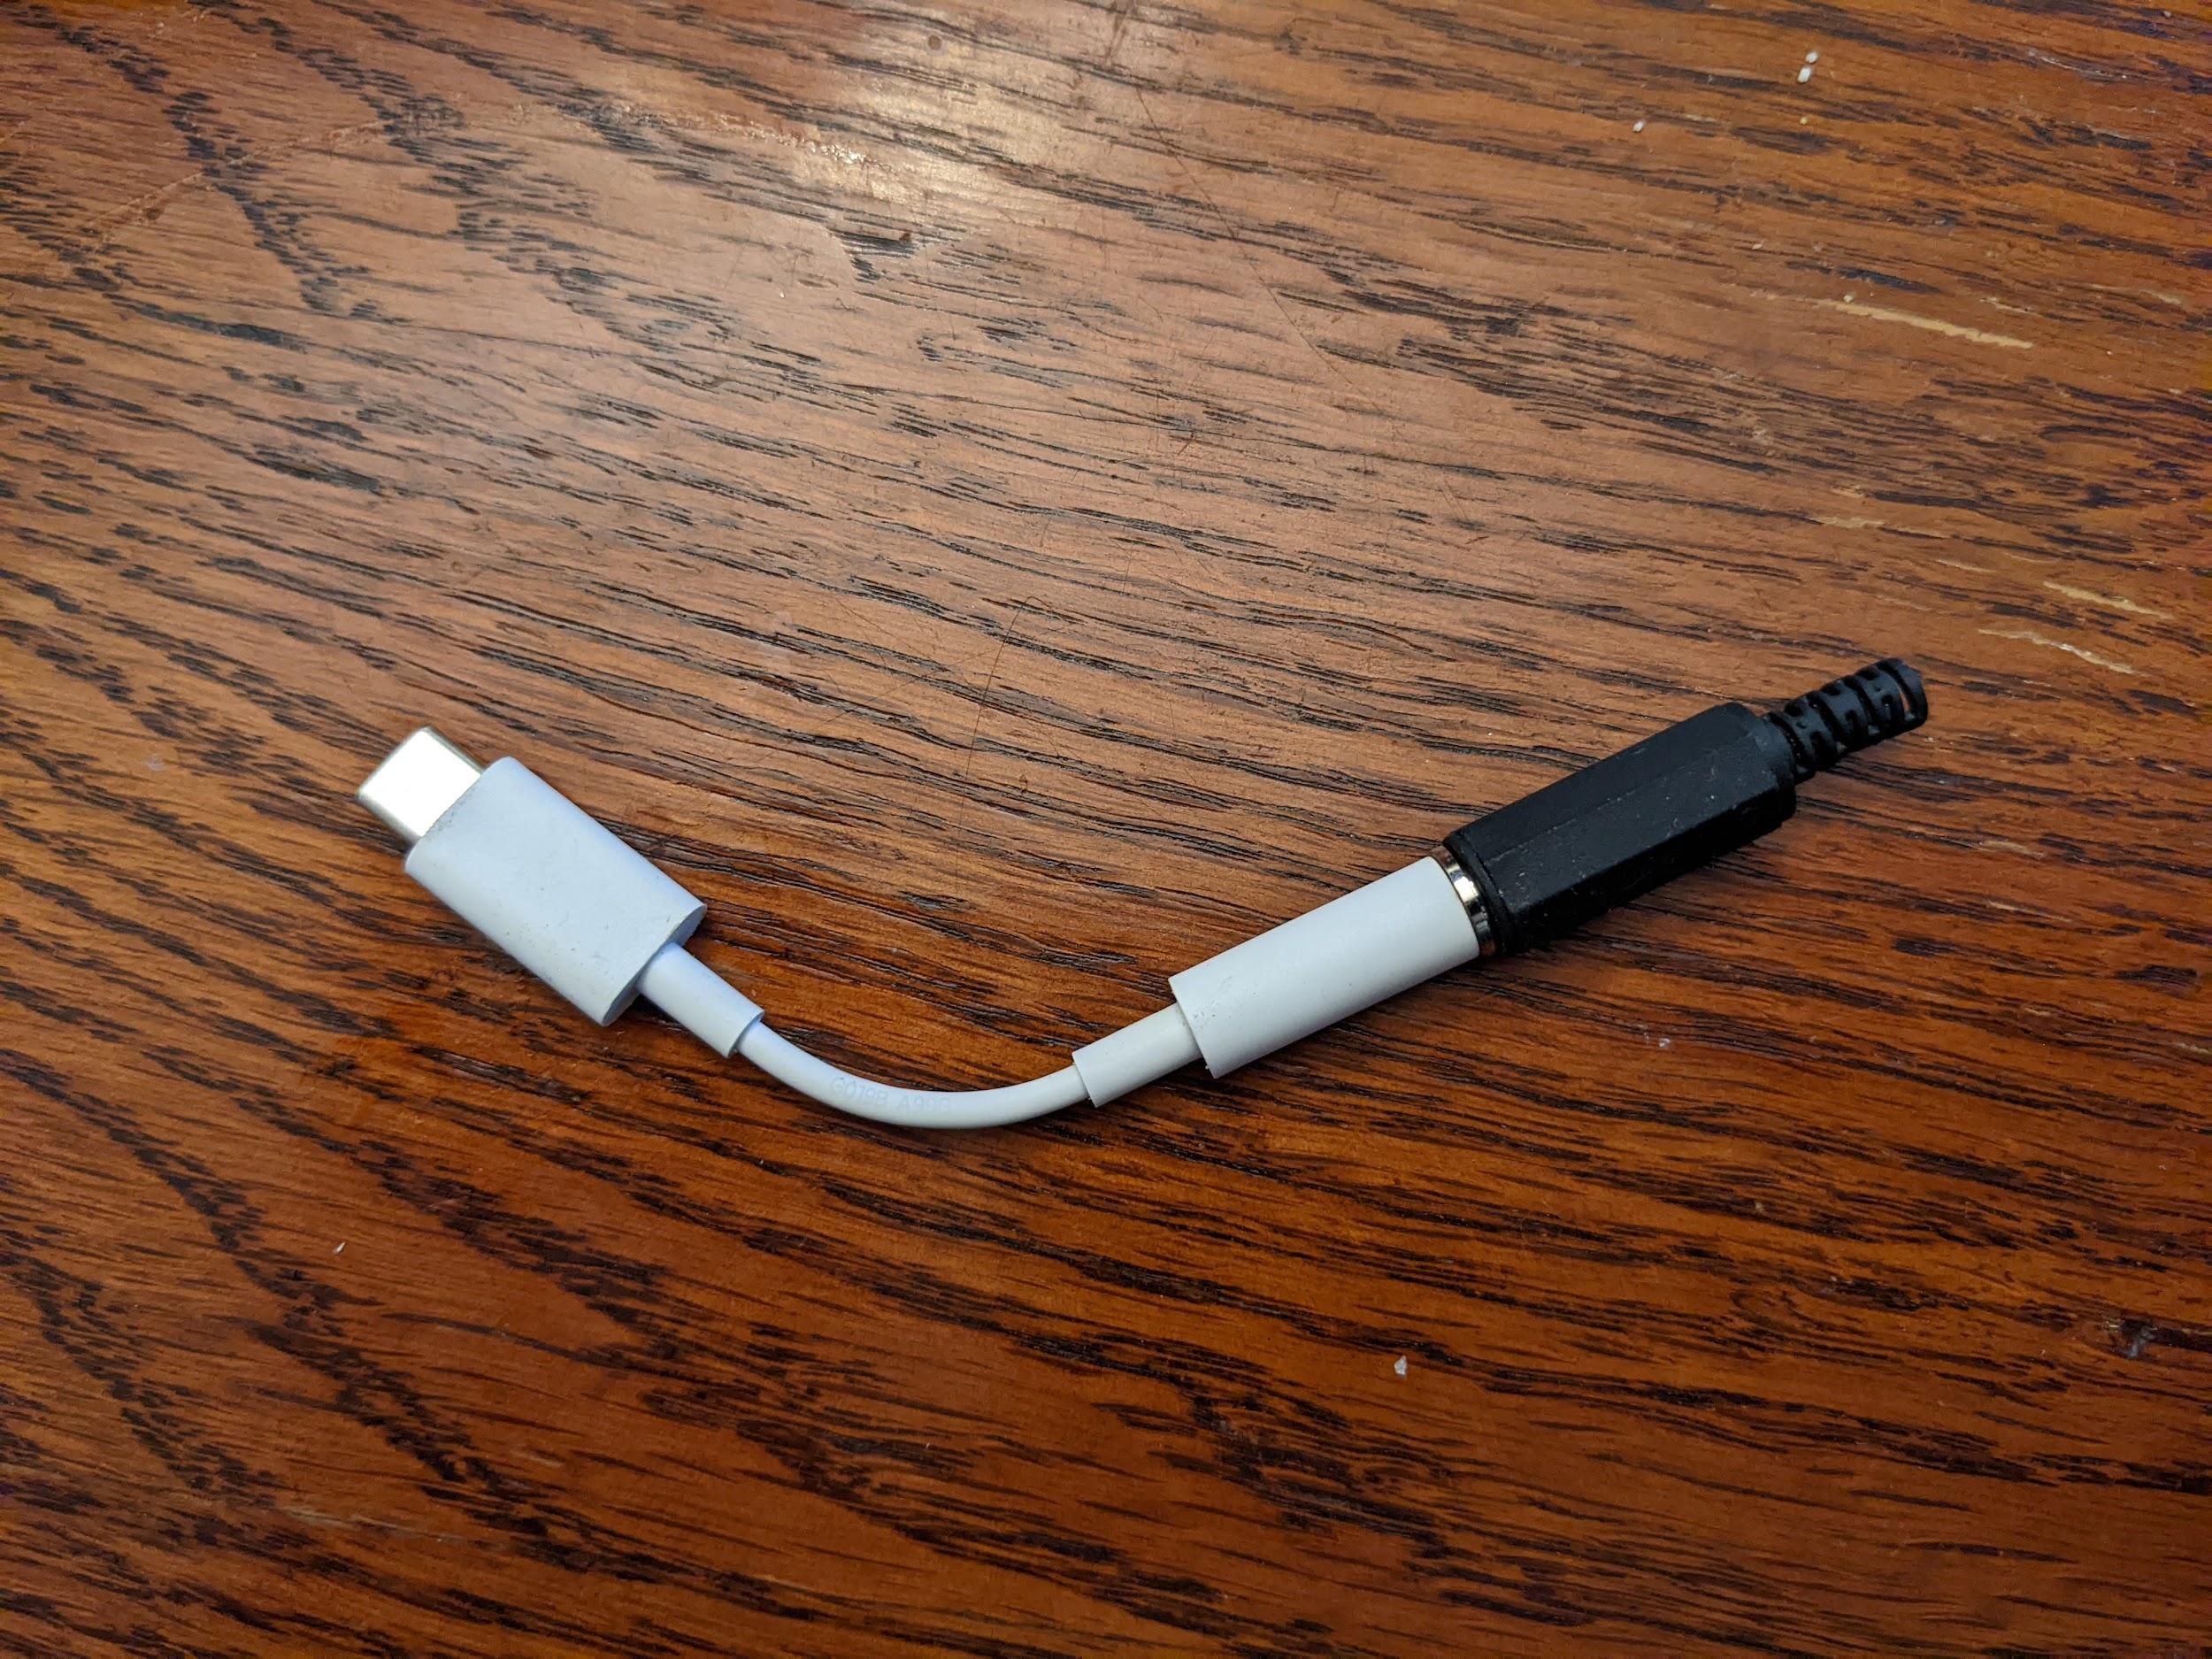 連接到 USB 轉模擬轉接器的音訊環回插頭